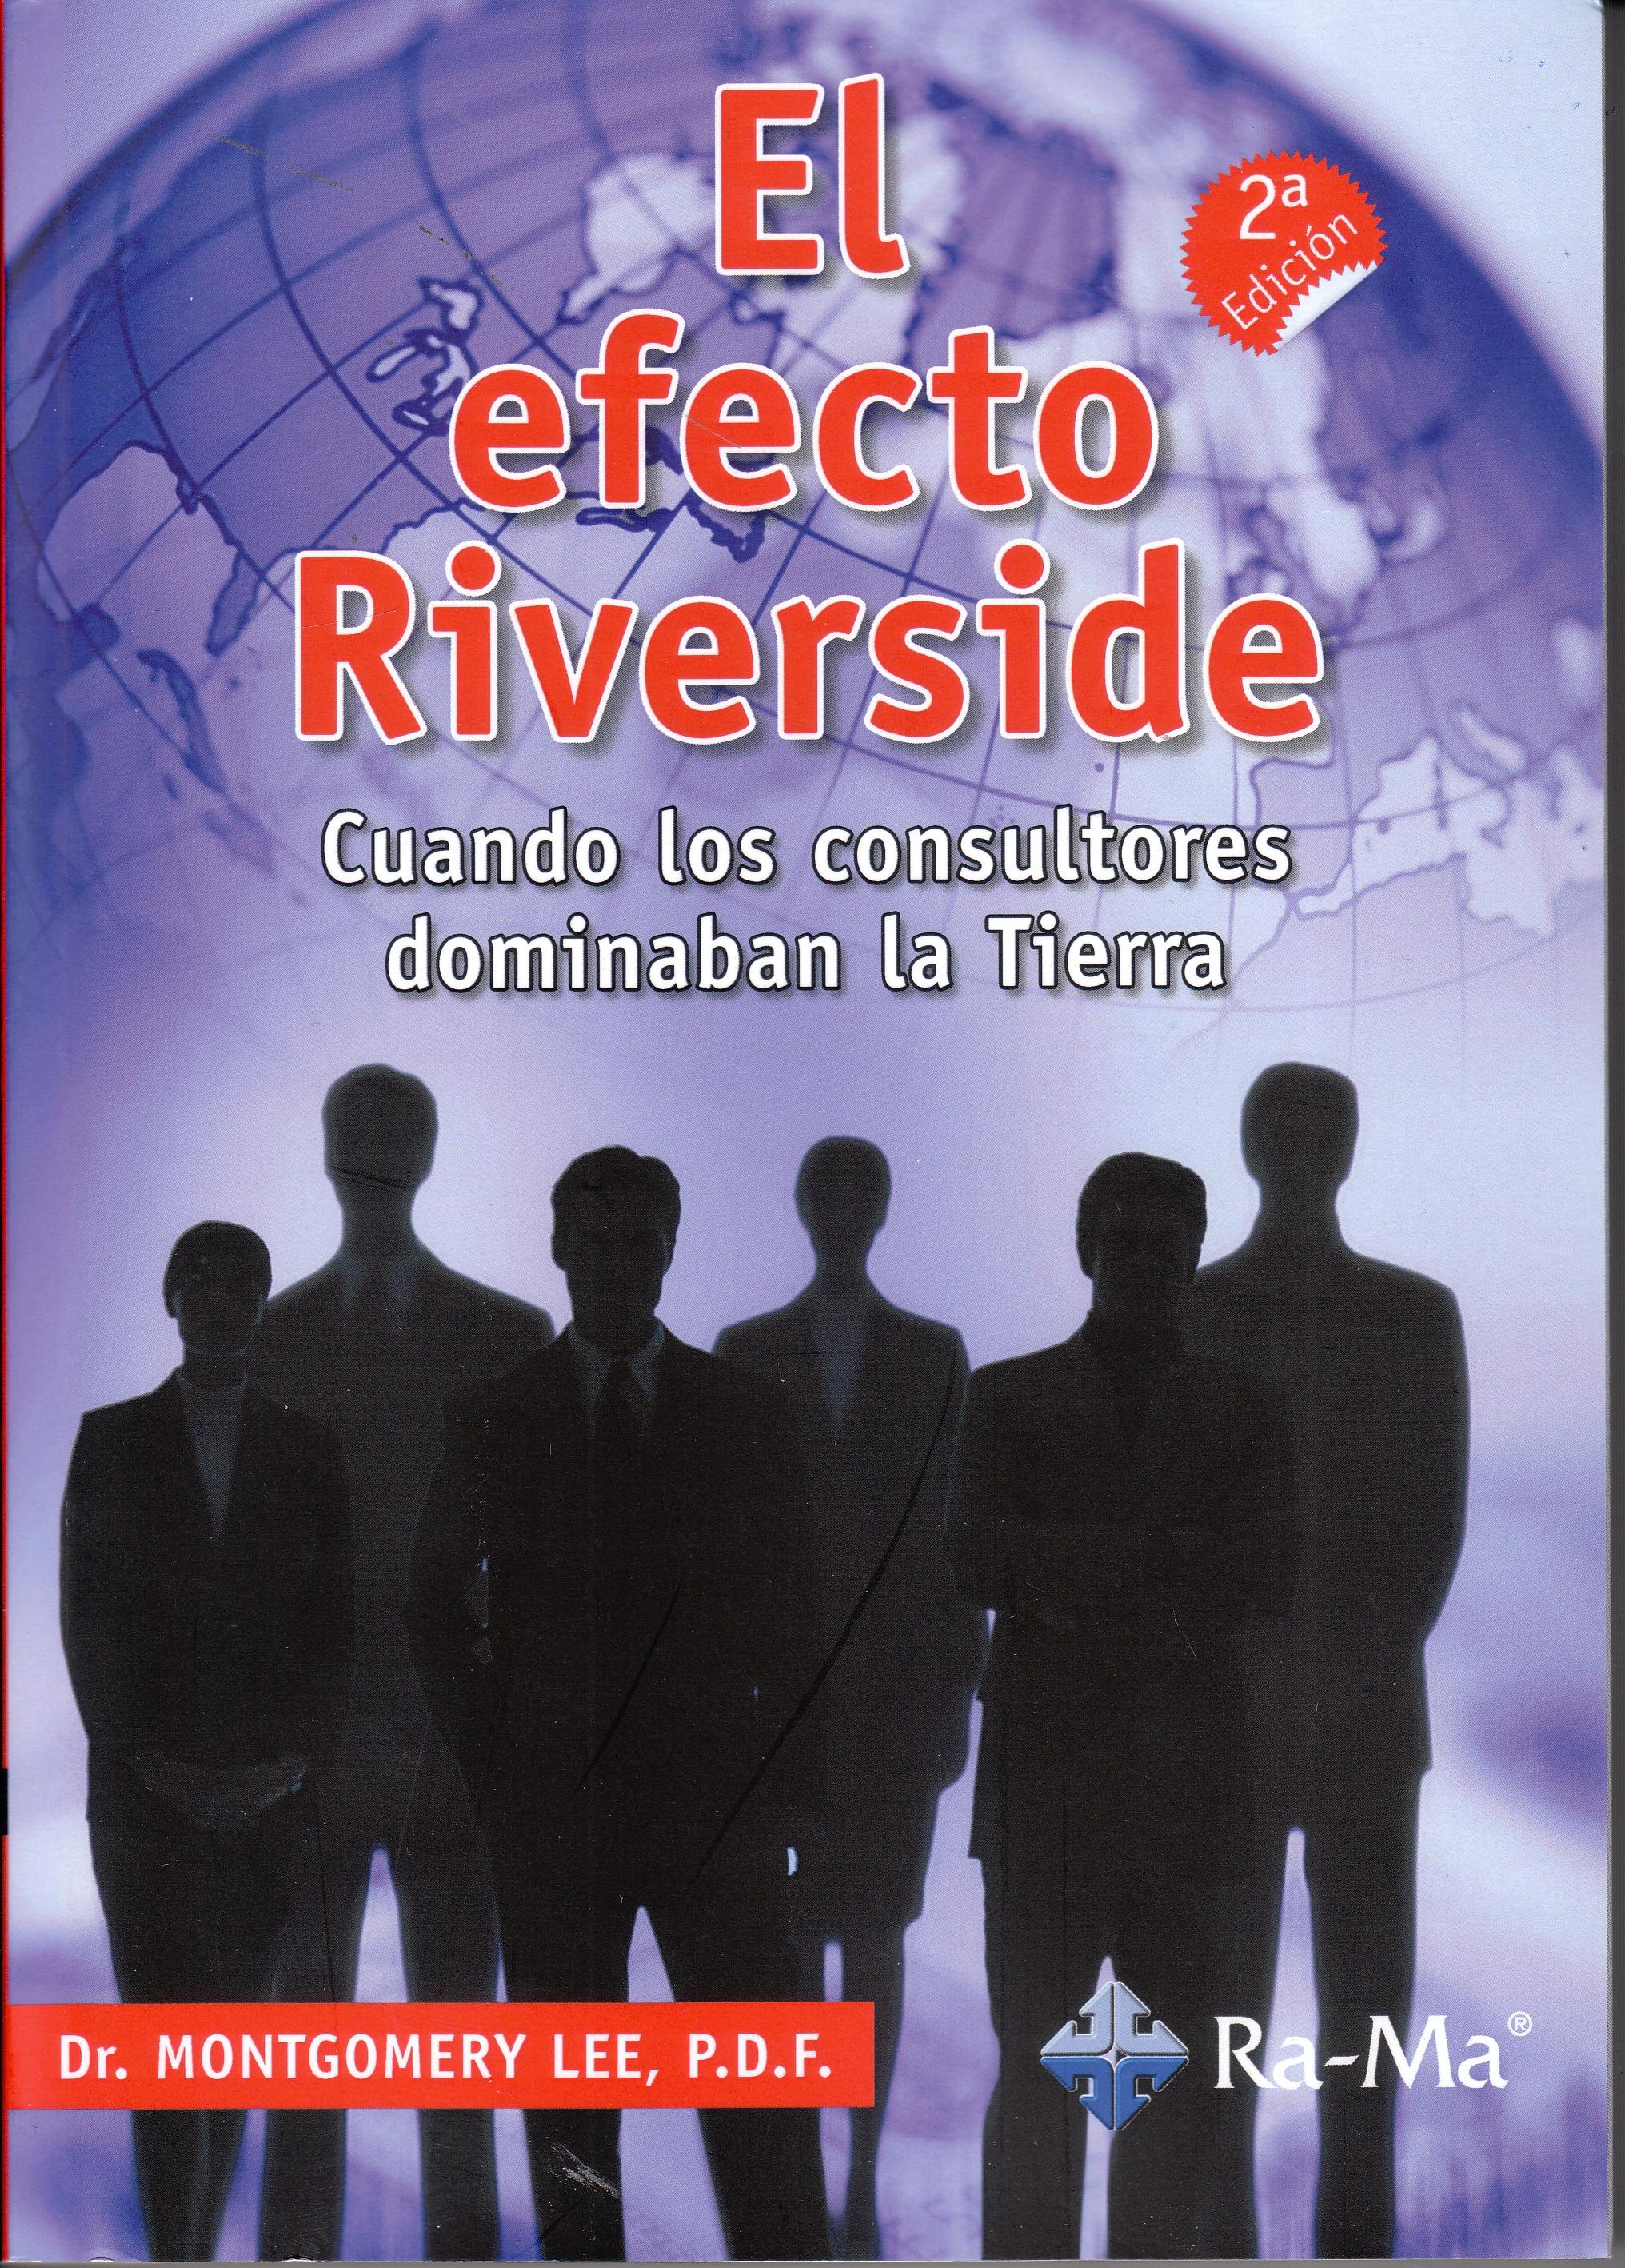 El Efecto Riverside "Cuando los consultores dominaban la tierra"